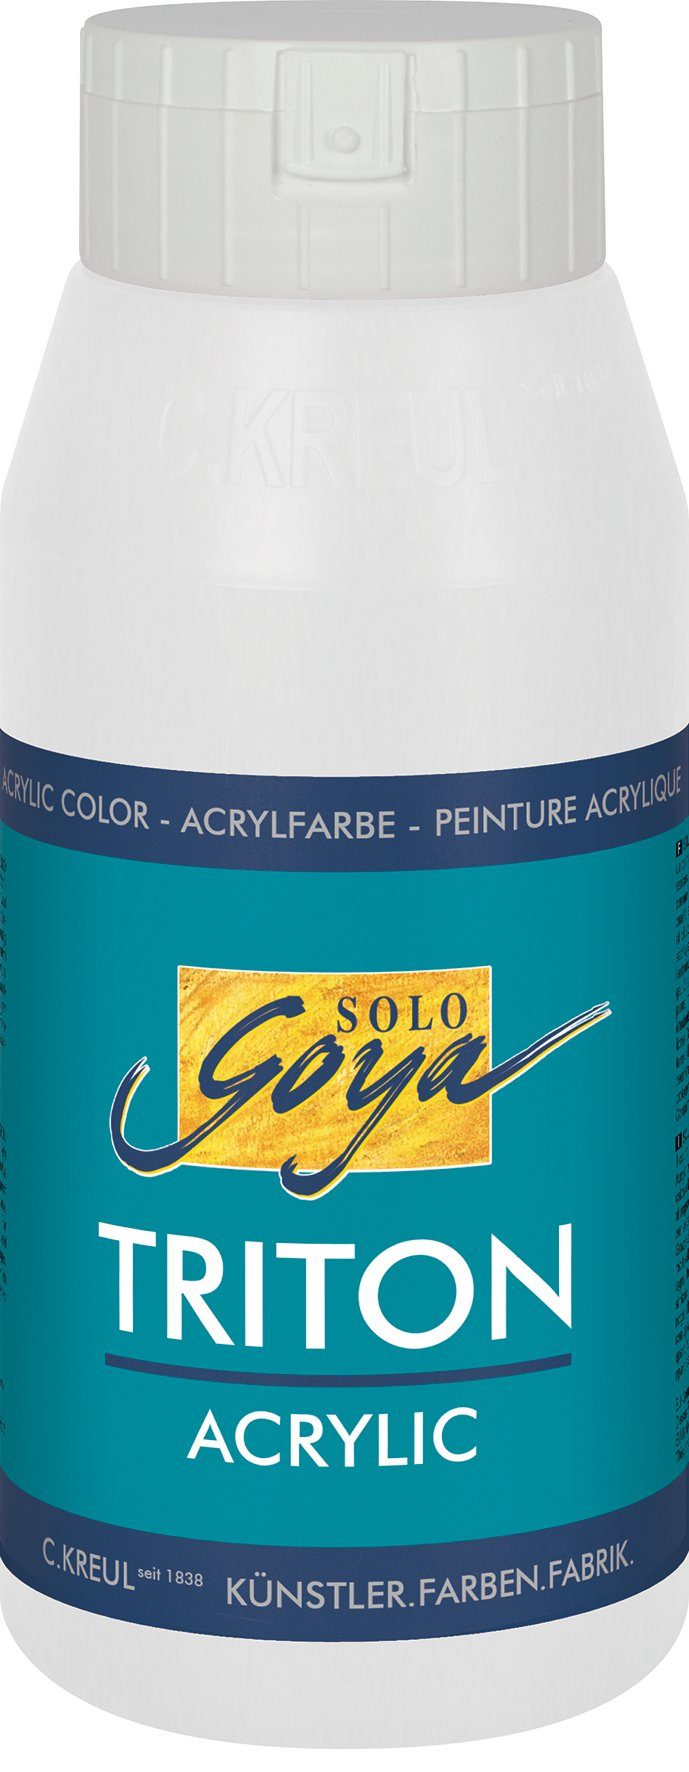 Kreul Acrylfarbe 750 Solo ml Weiß Goya Acrylic, Triton